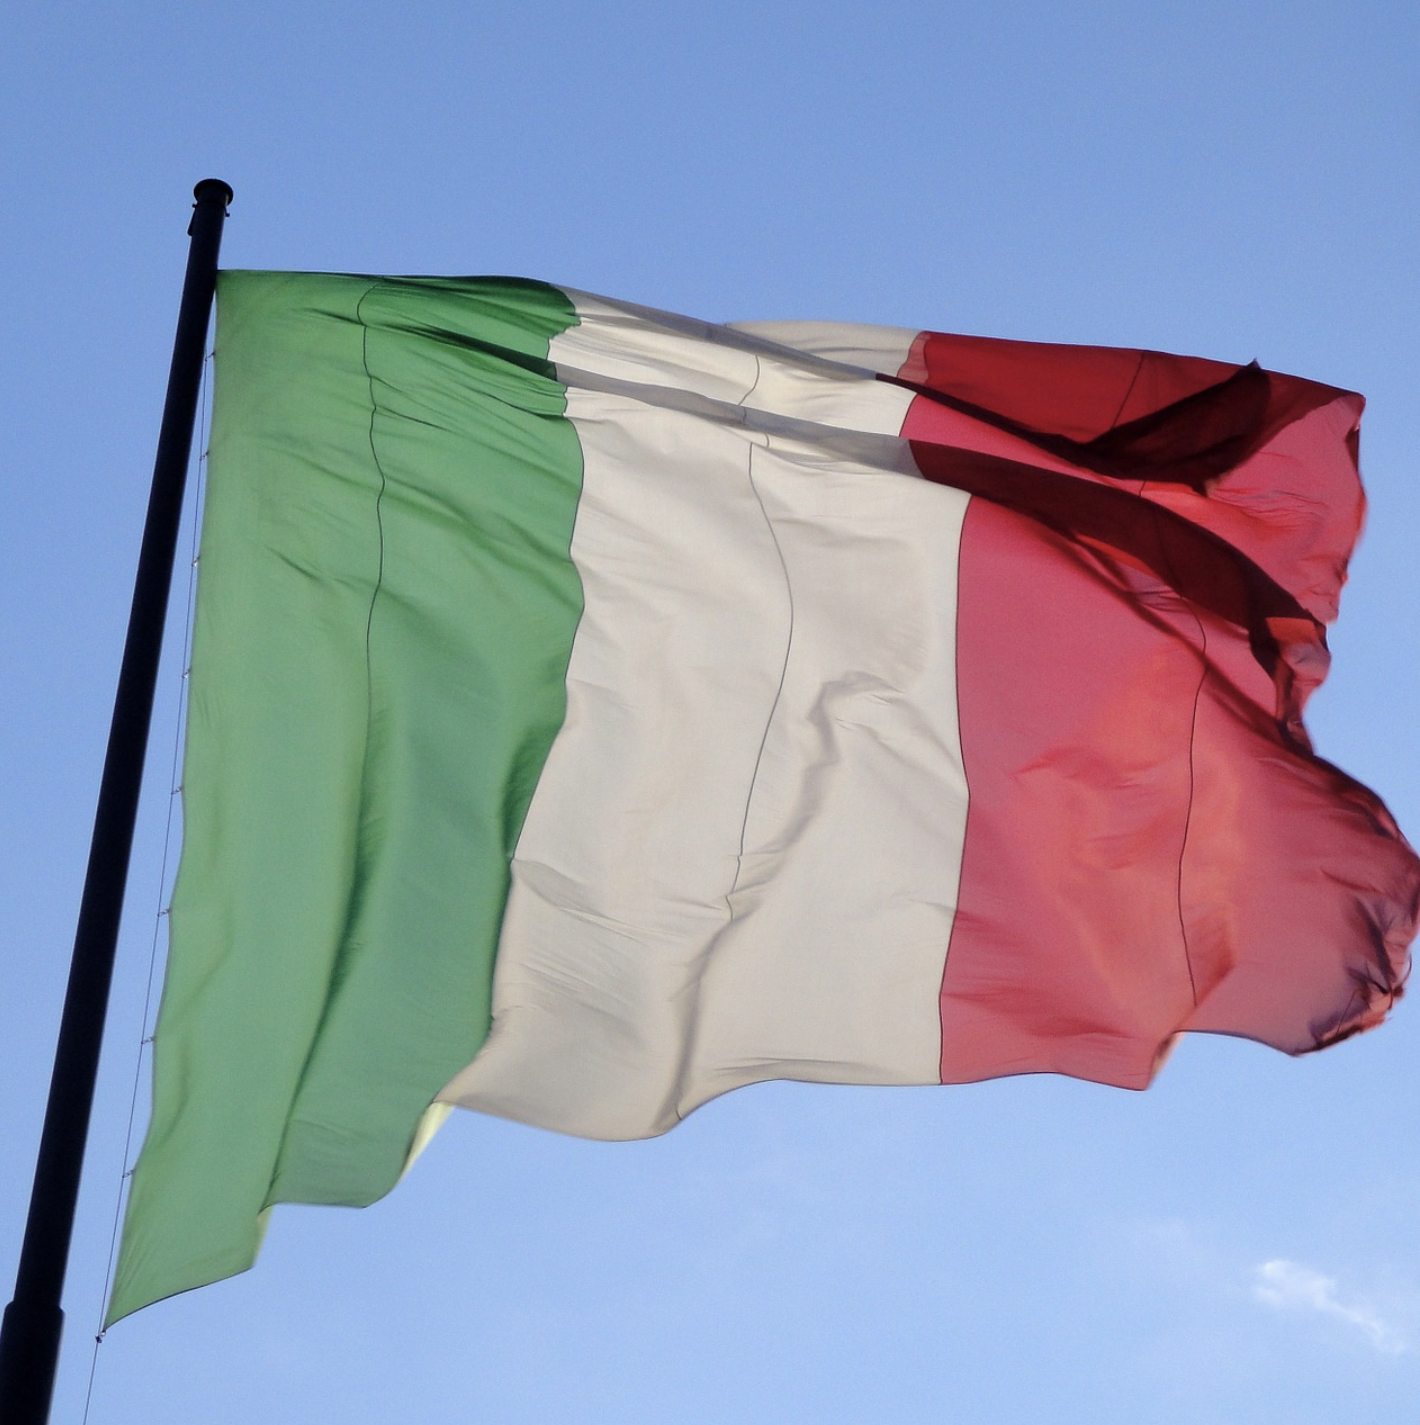 Le gouvernement italien ne veut pas modifier les piliers de son budget 2019